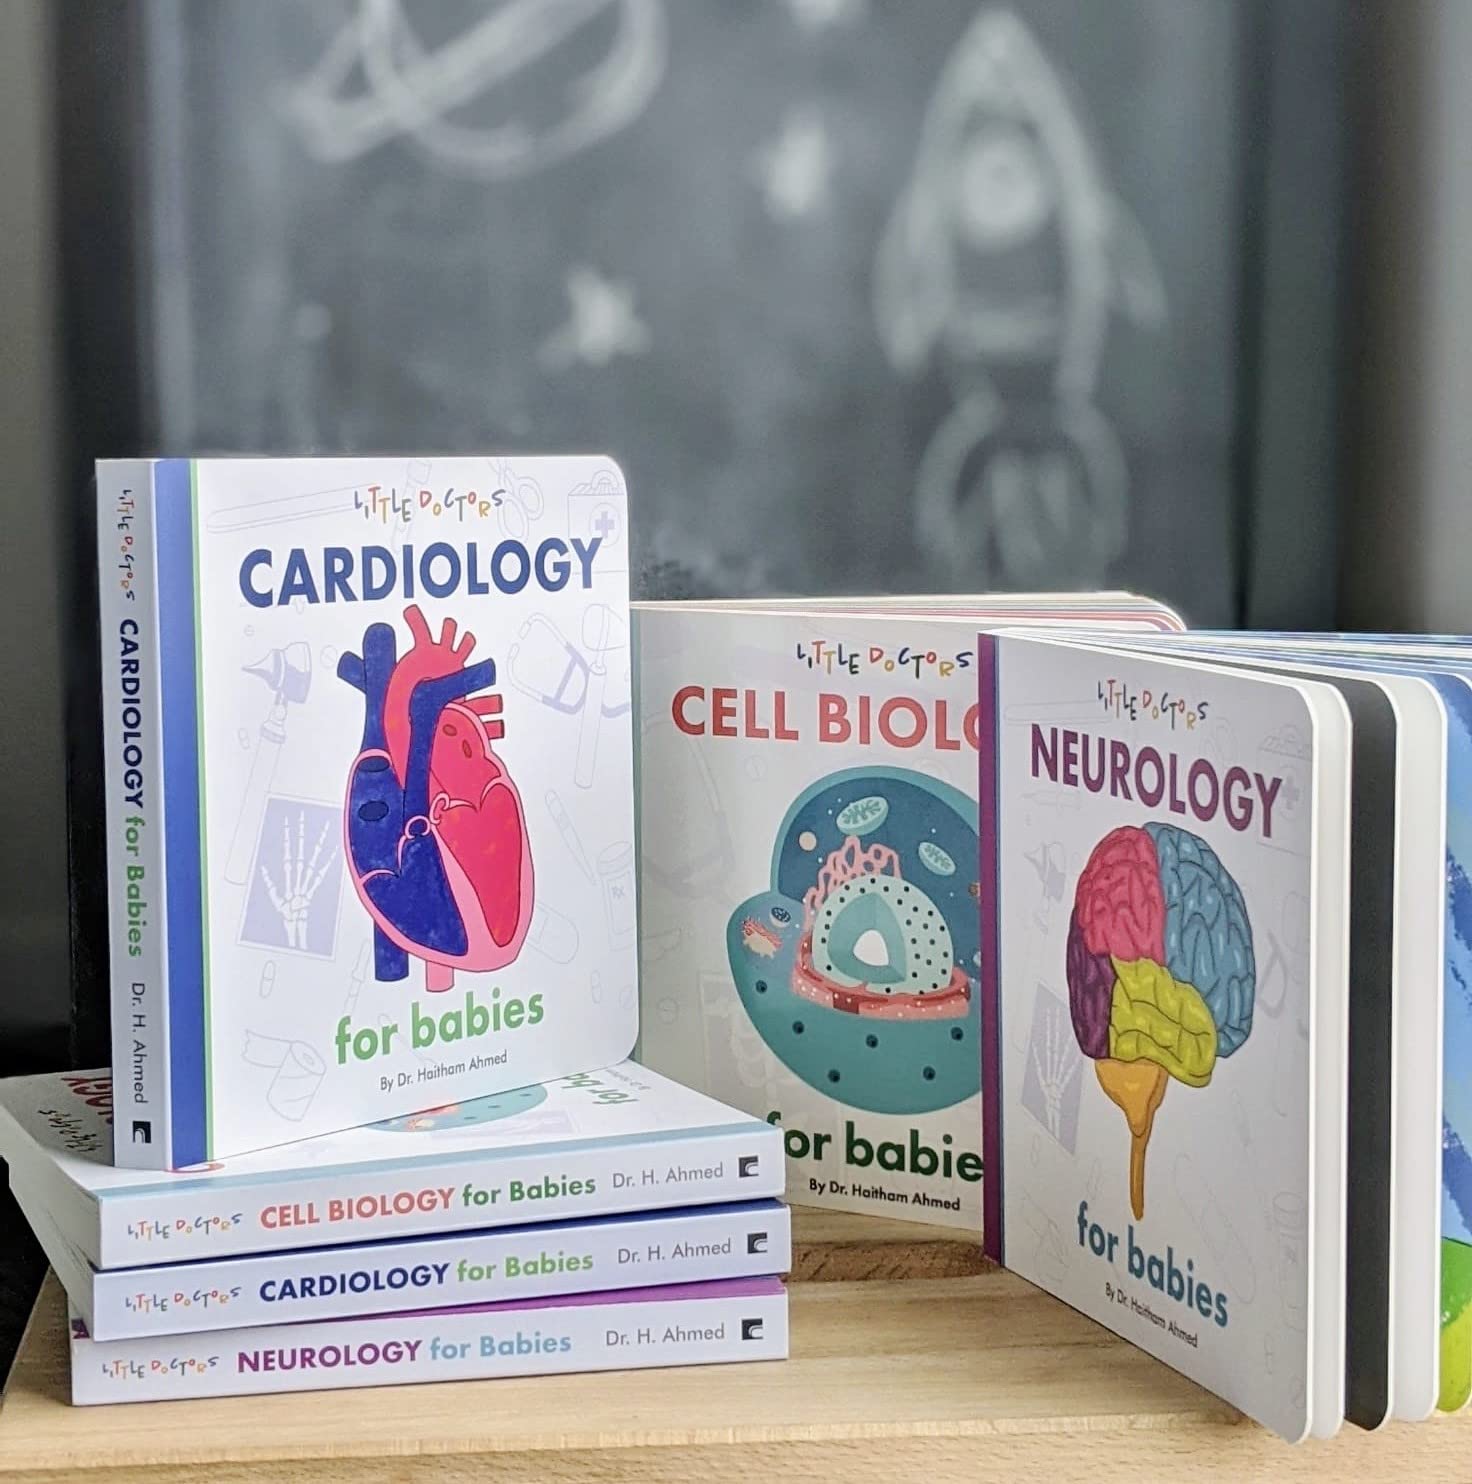 Little Doctors Children's Books Set by Dr Haitham Ahmed